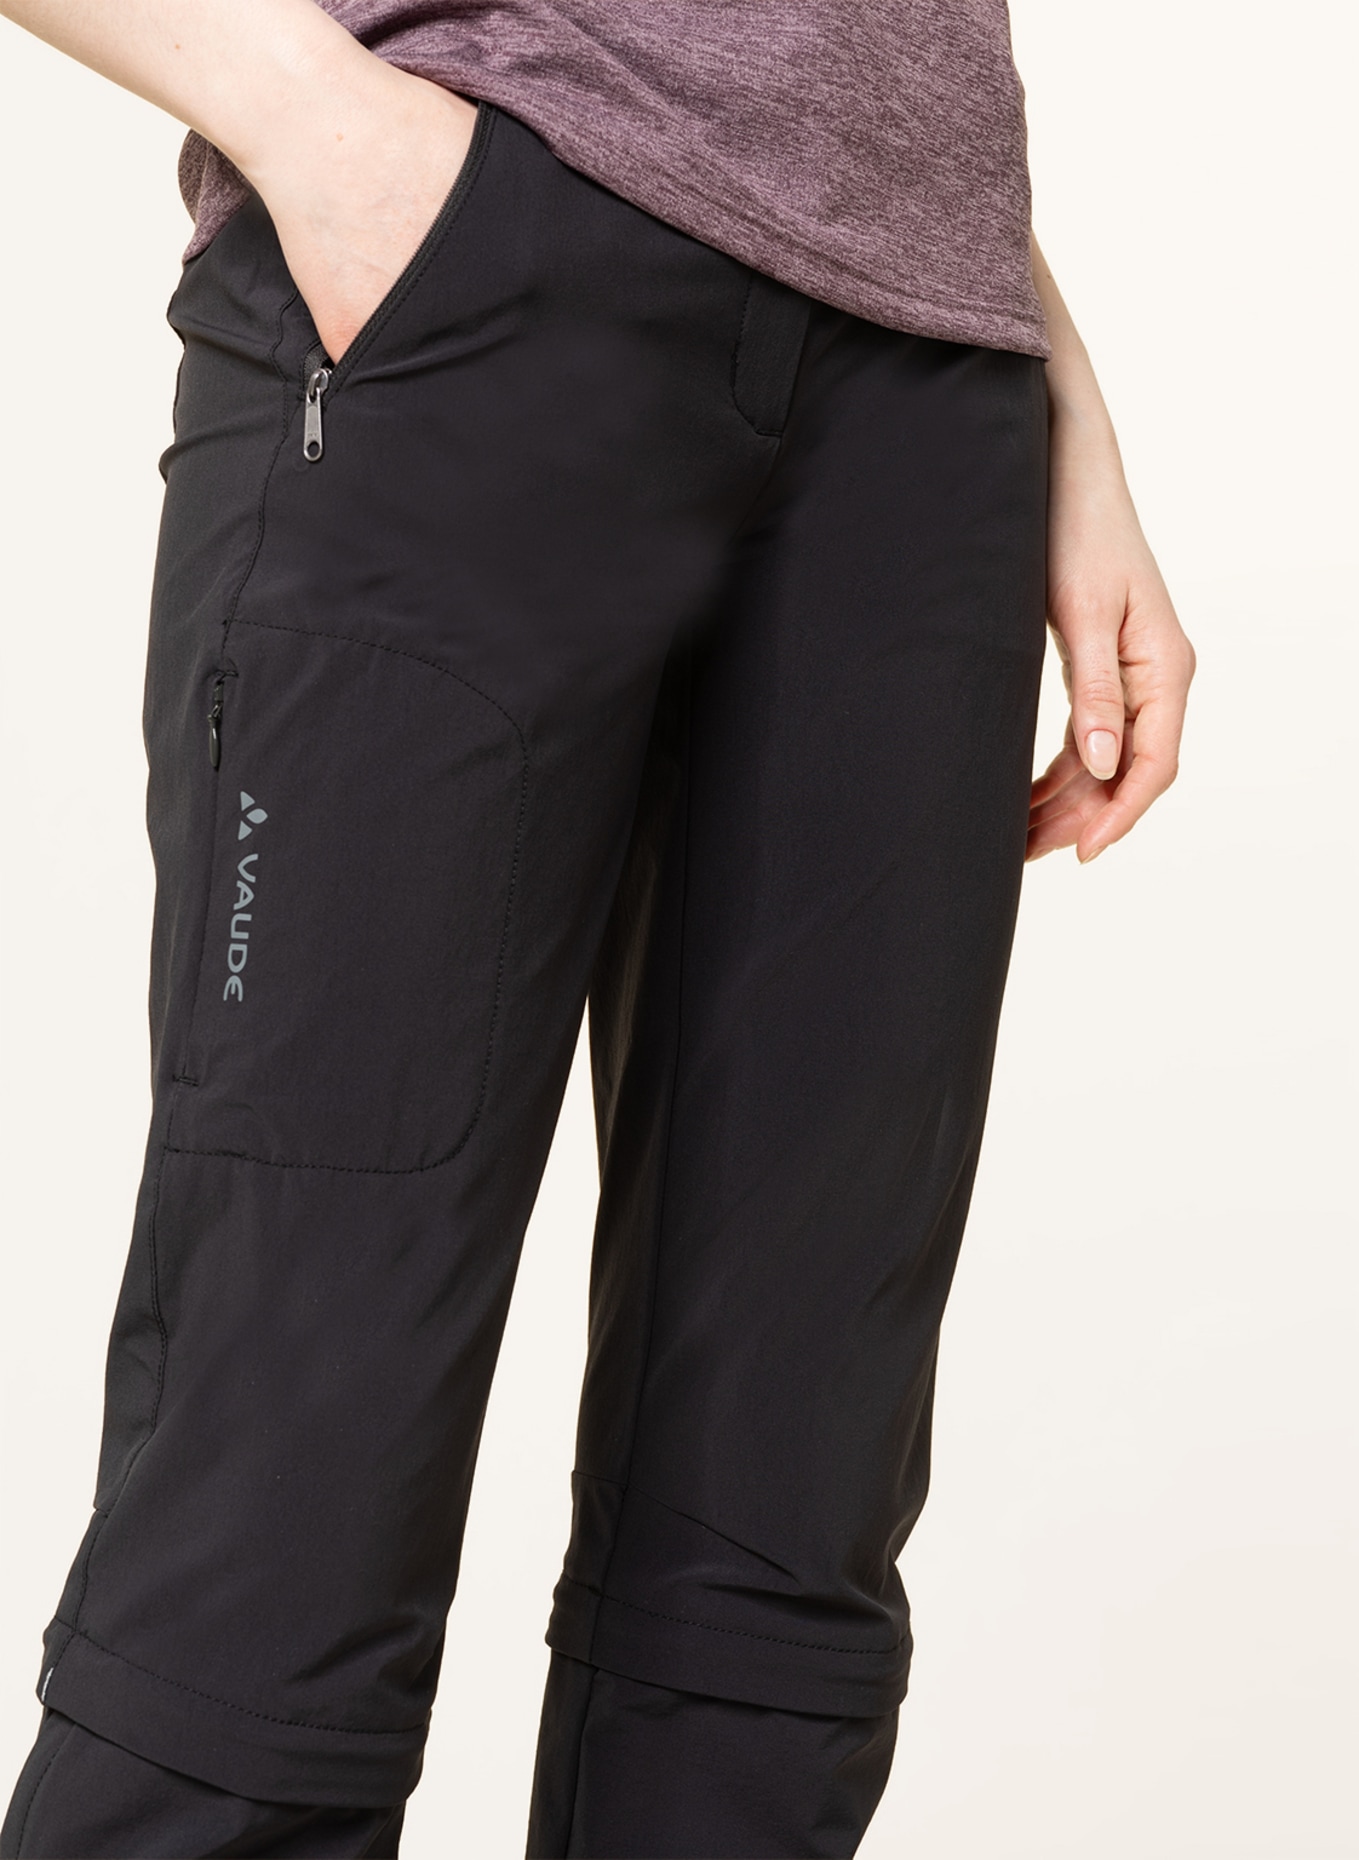 Vaude Farley Stretch Capri III - Walking trousers Women's, Buy online